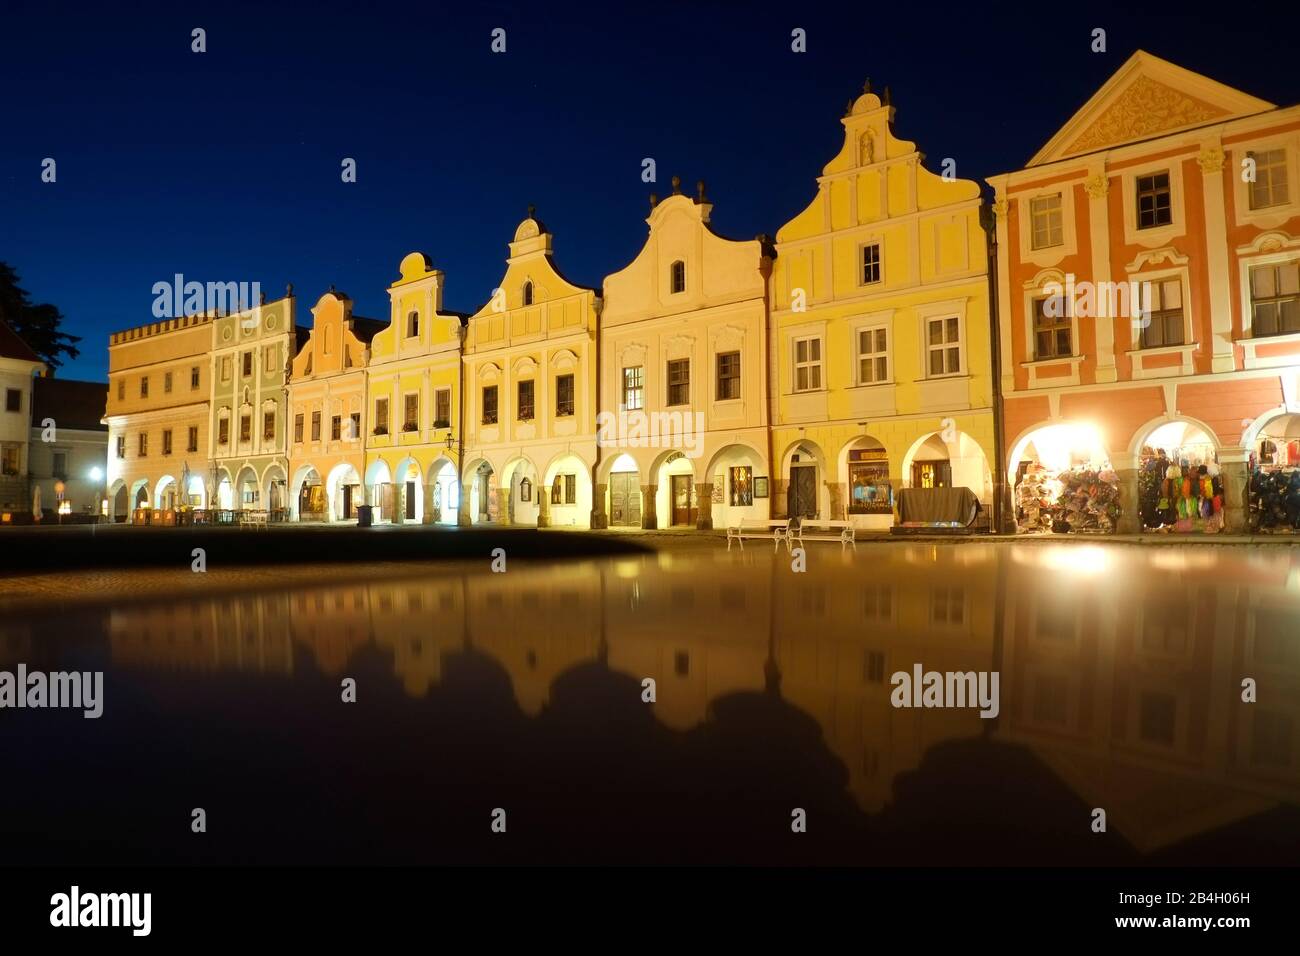 Telc, République Tchèque. Maisons de ville baroques reflétées dans le toit de la voiture Banque D'Images